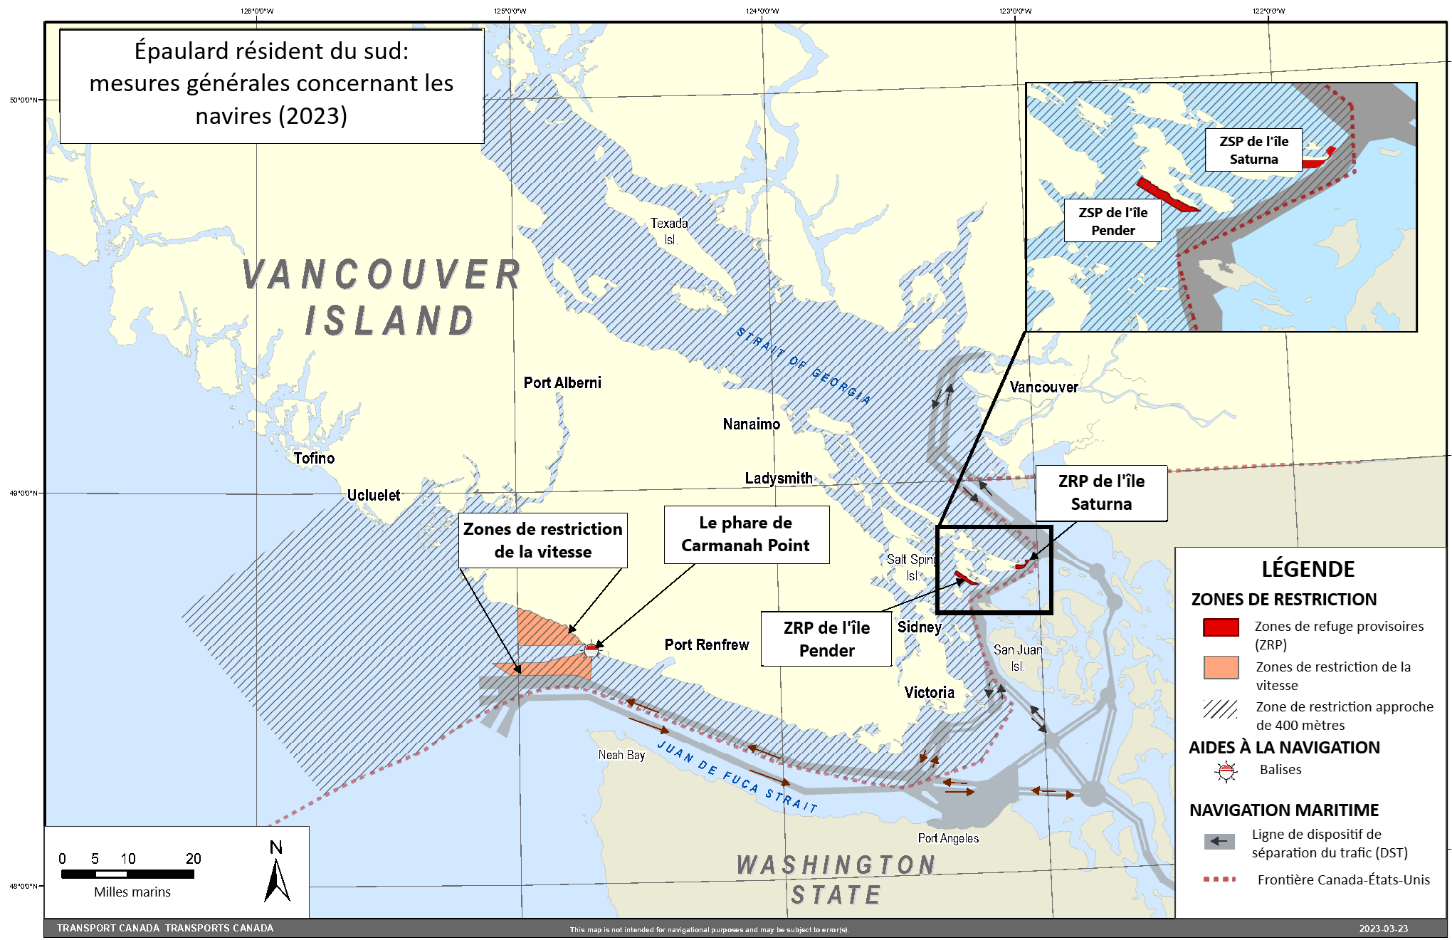 Carte rectangulaire de couleur grise, jaune et bleue
                     illustrant les mesures générales relatives aux navires pour
                     l'épaulard résident du sud dans les régions de l'Ile de 
                     Vancouver et l'État de Washington.